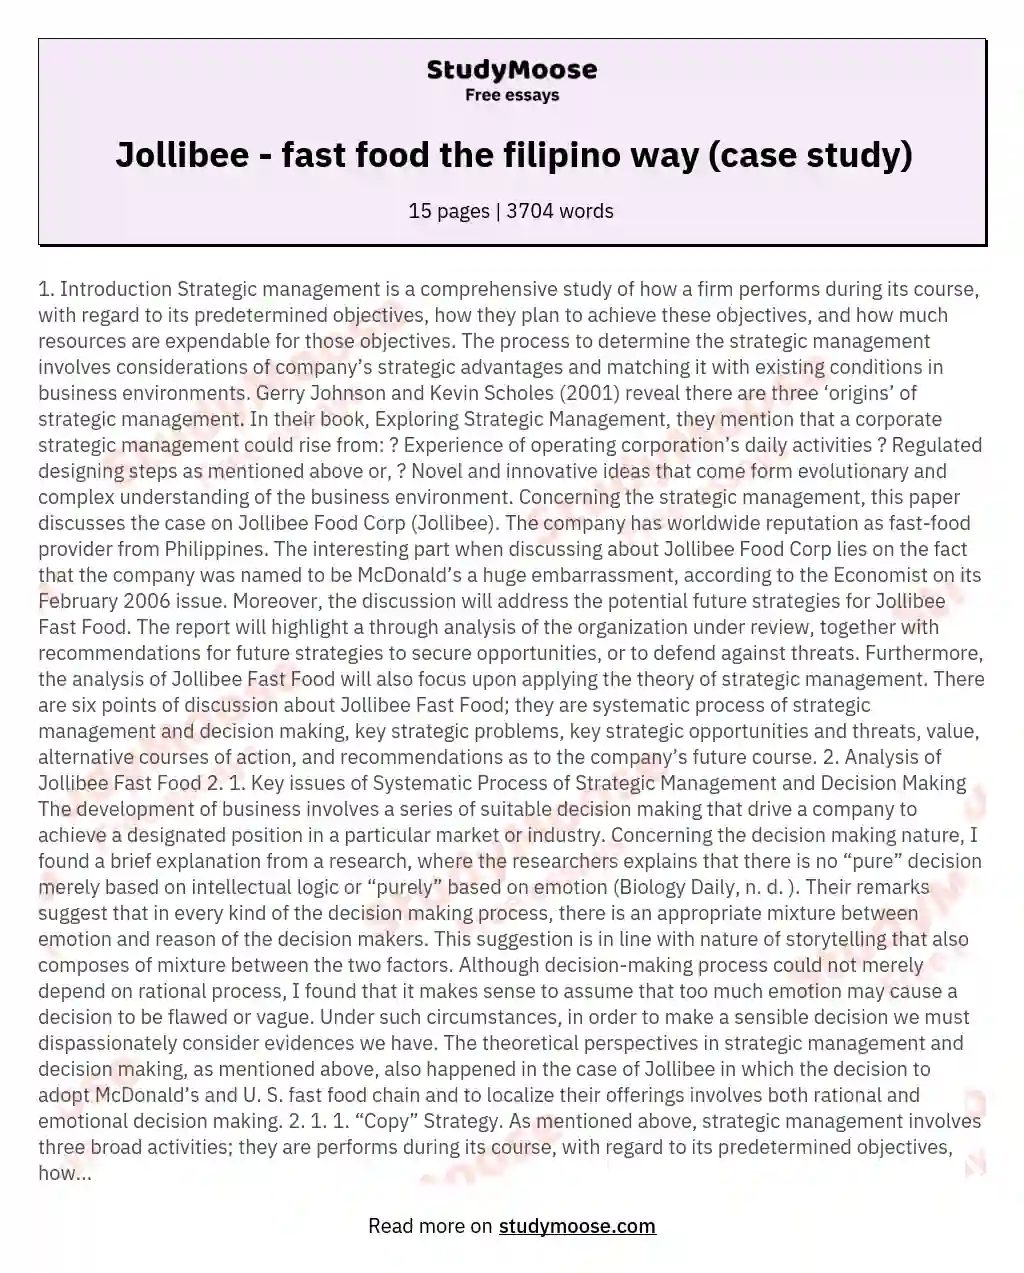 jollibee case study analysis